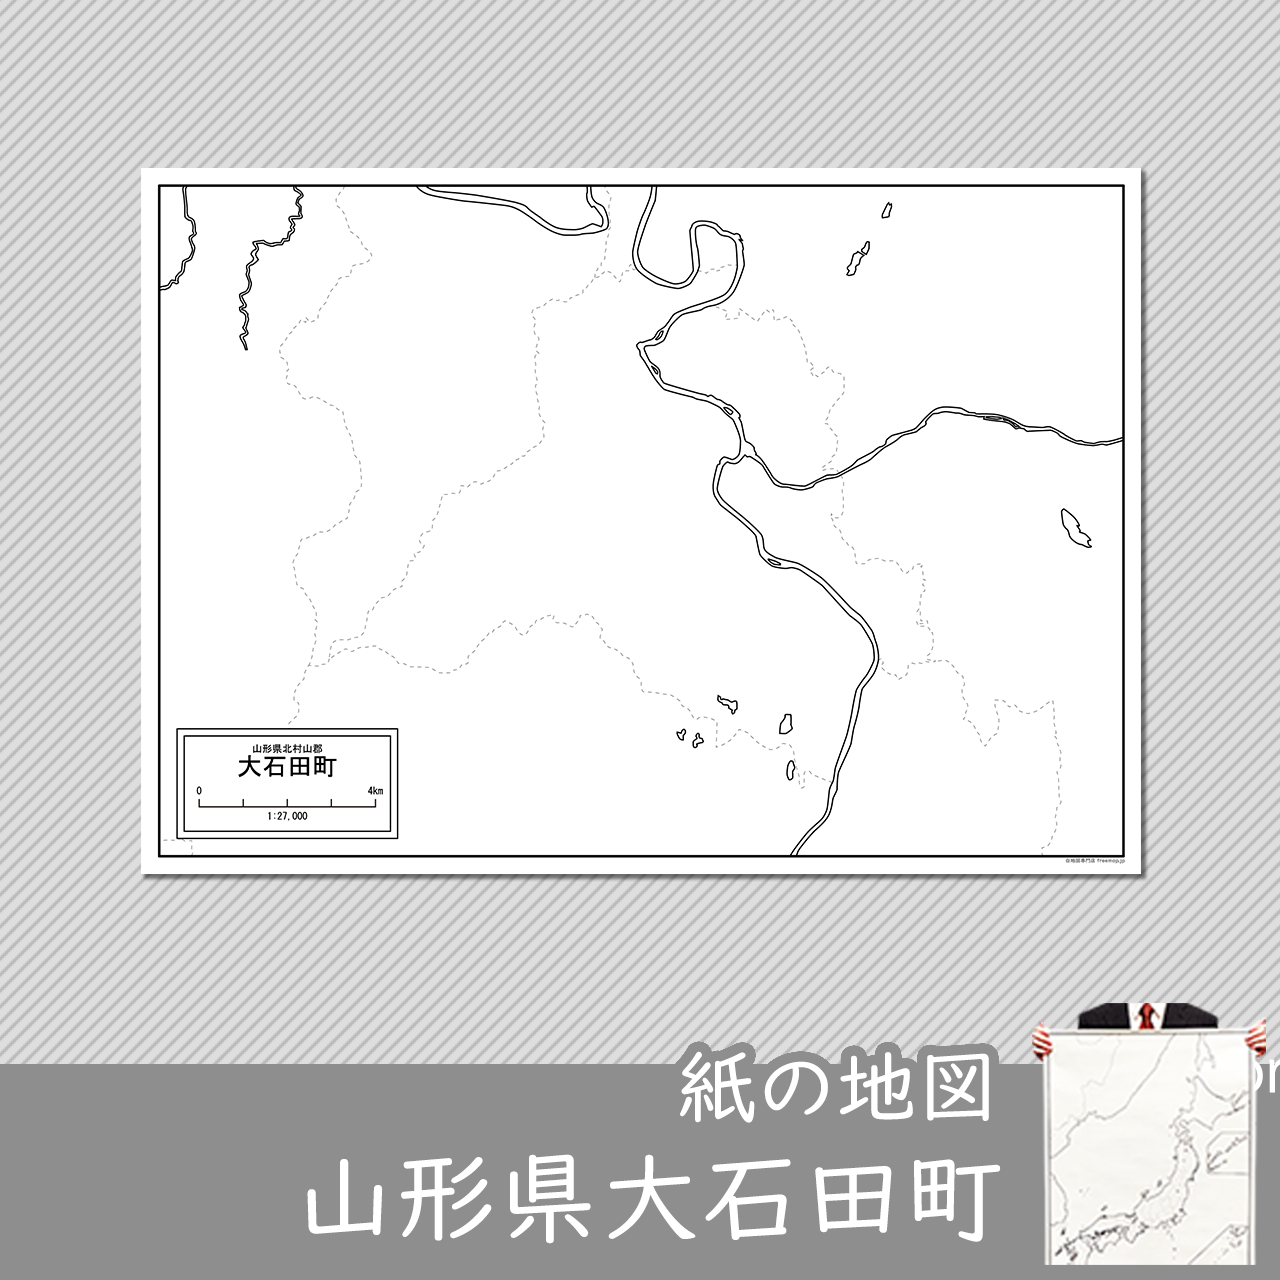 大石田町の紙の白地図のサムネイル